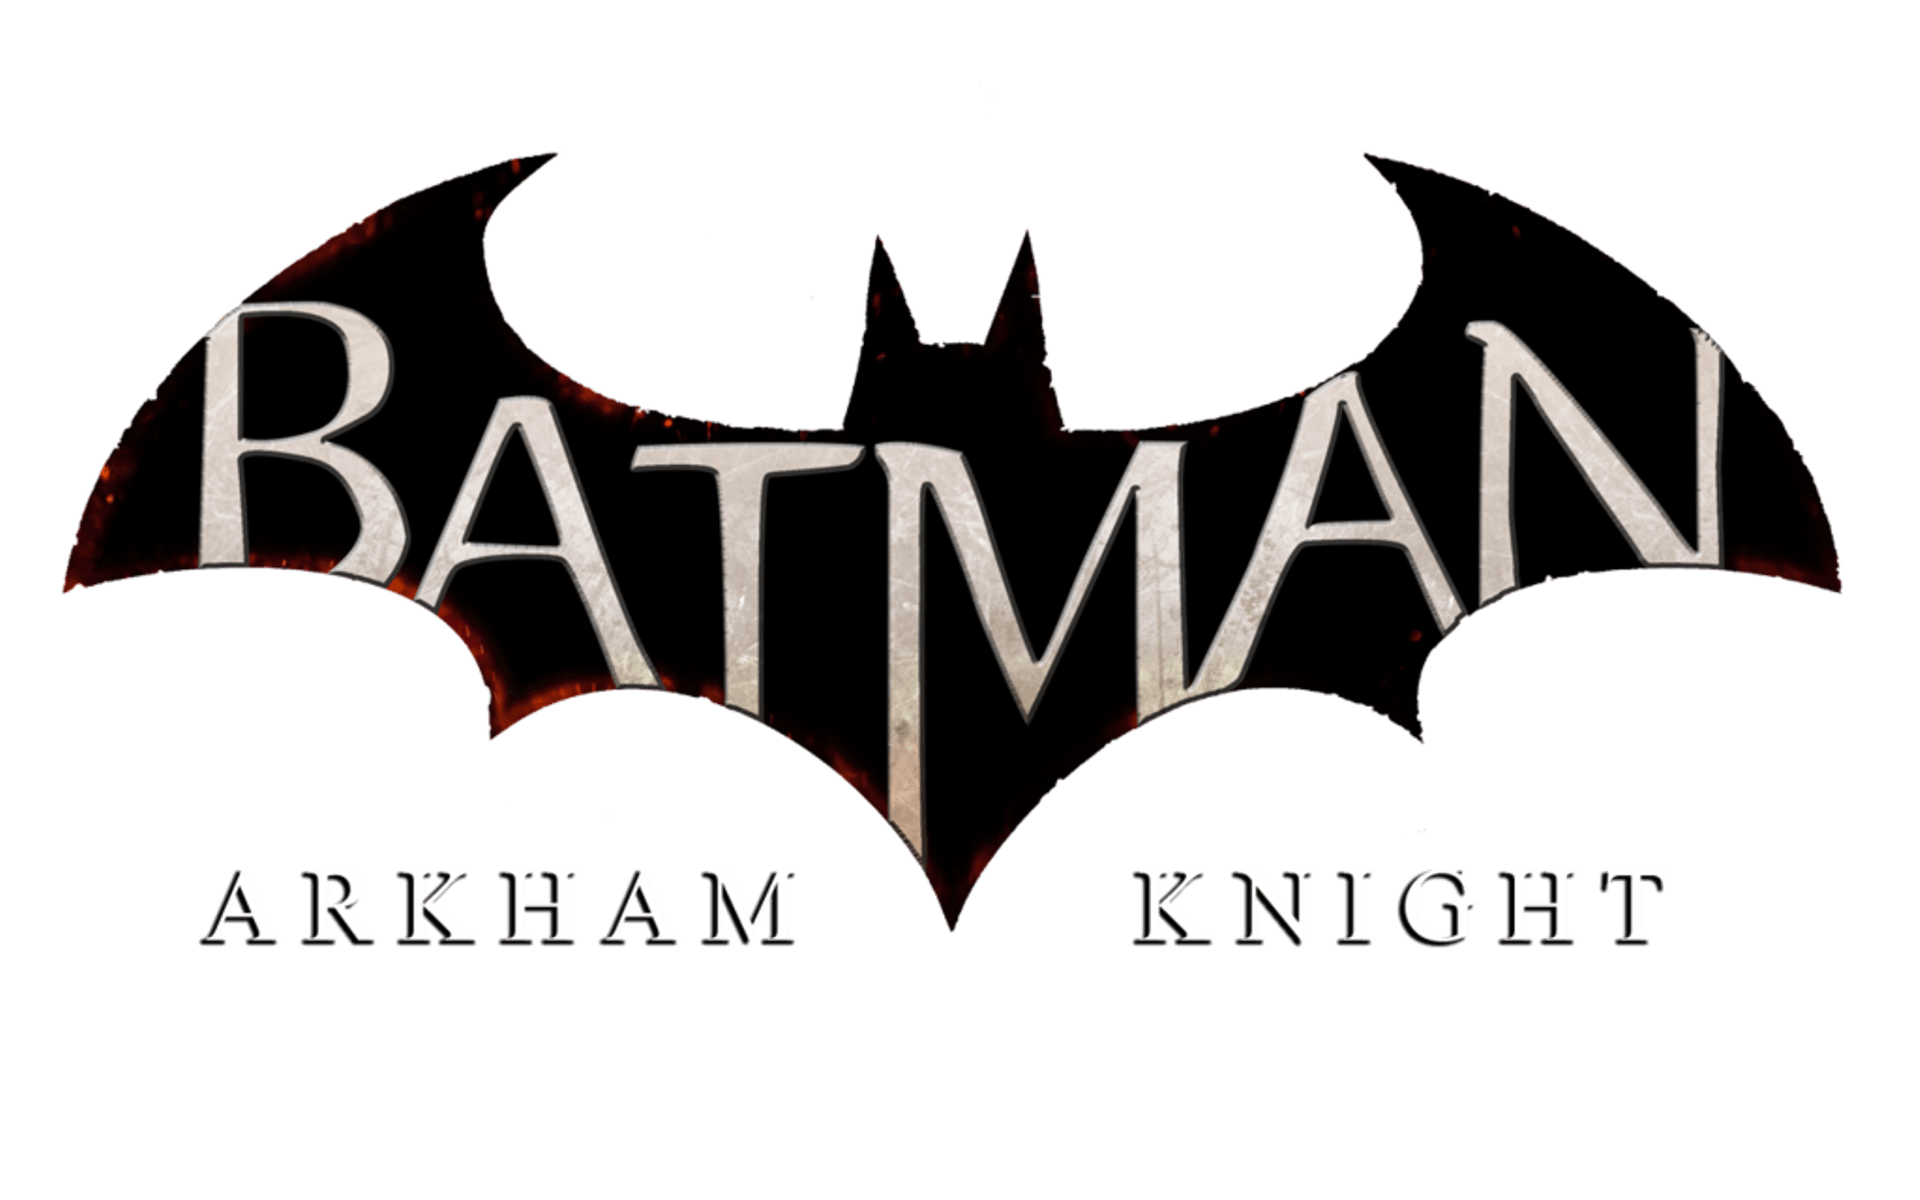 Batman Arkham Knight Logo - Batman Arkham Knight Logo Wallpaper | nerd stuff | Pinterest ...